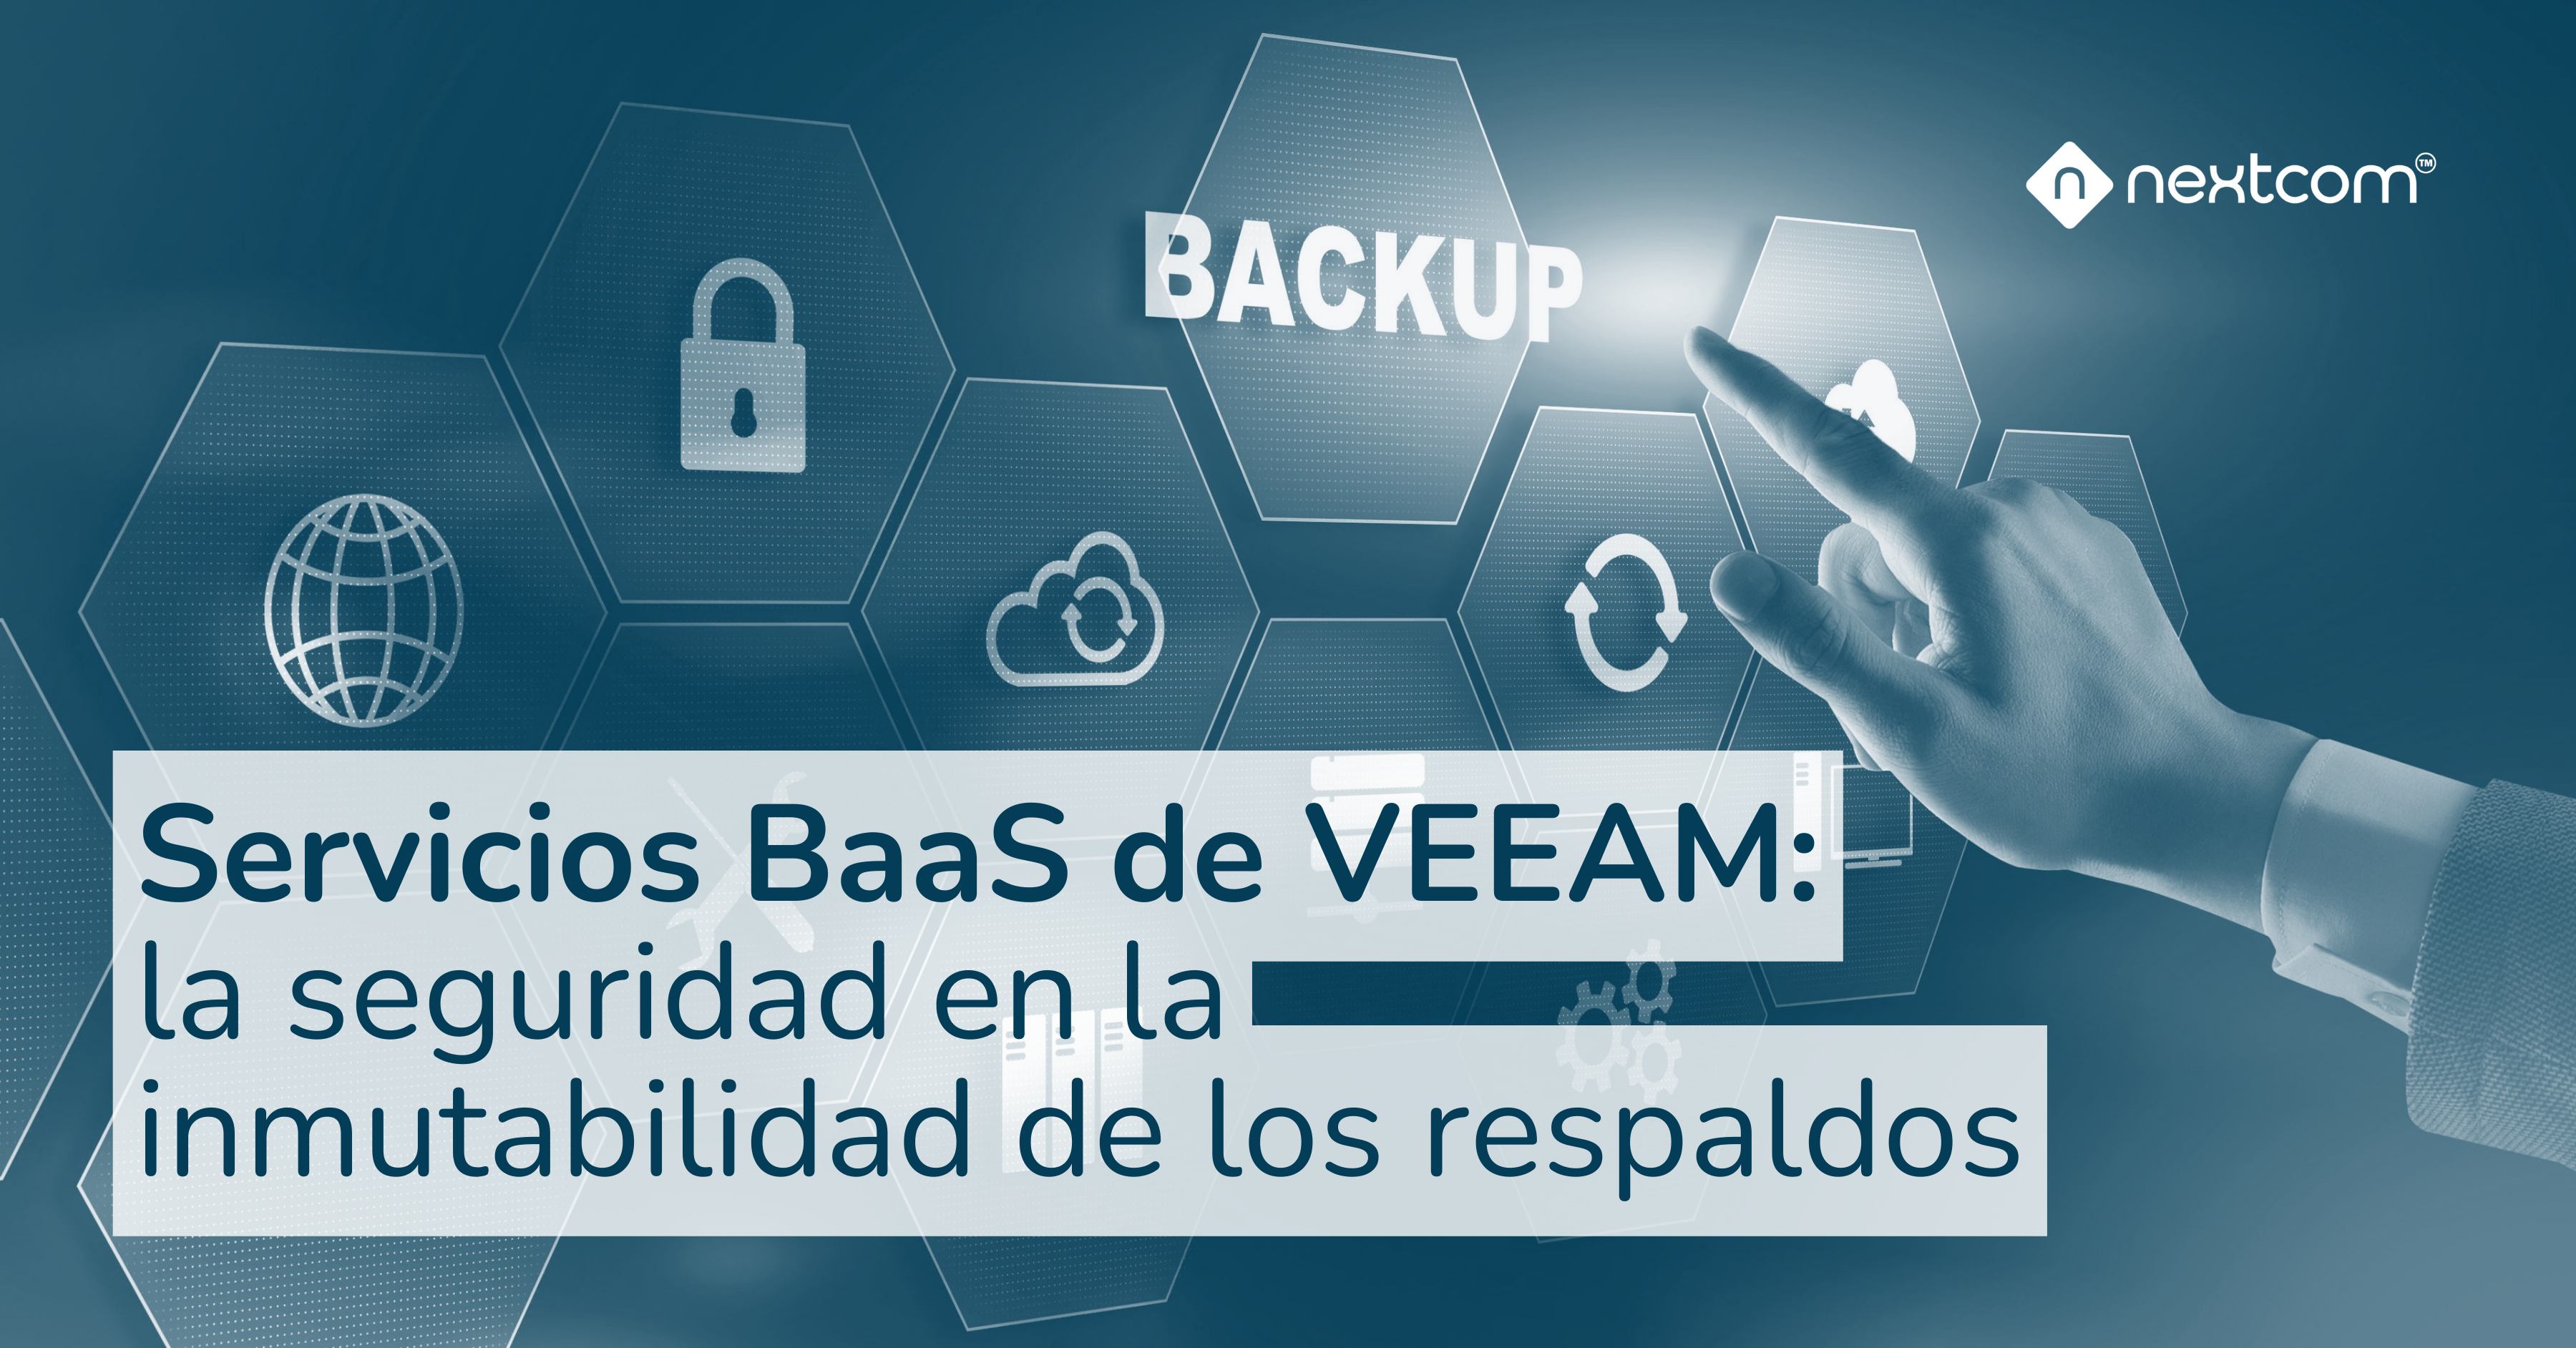 Servicios BaaS de VEEAM: La seguridad en la inmutabilidad de los respaldos.